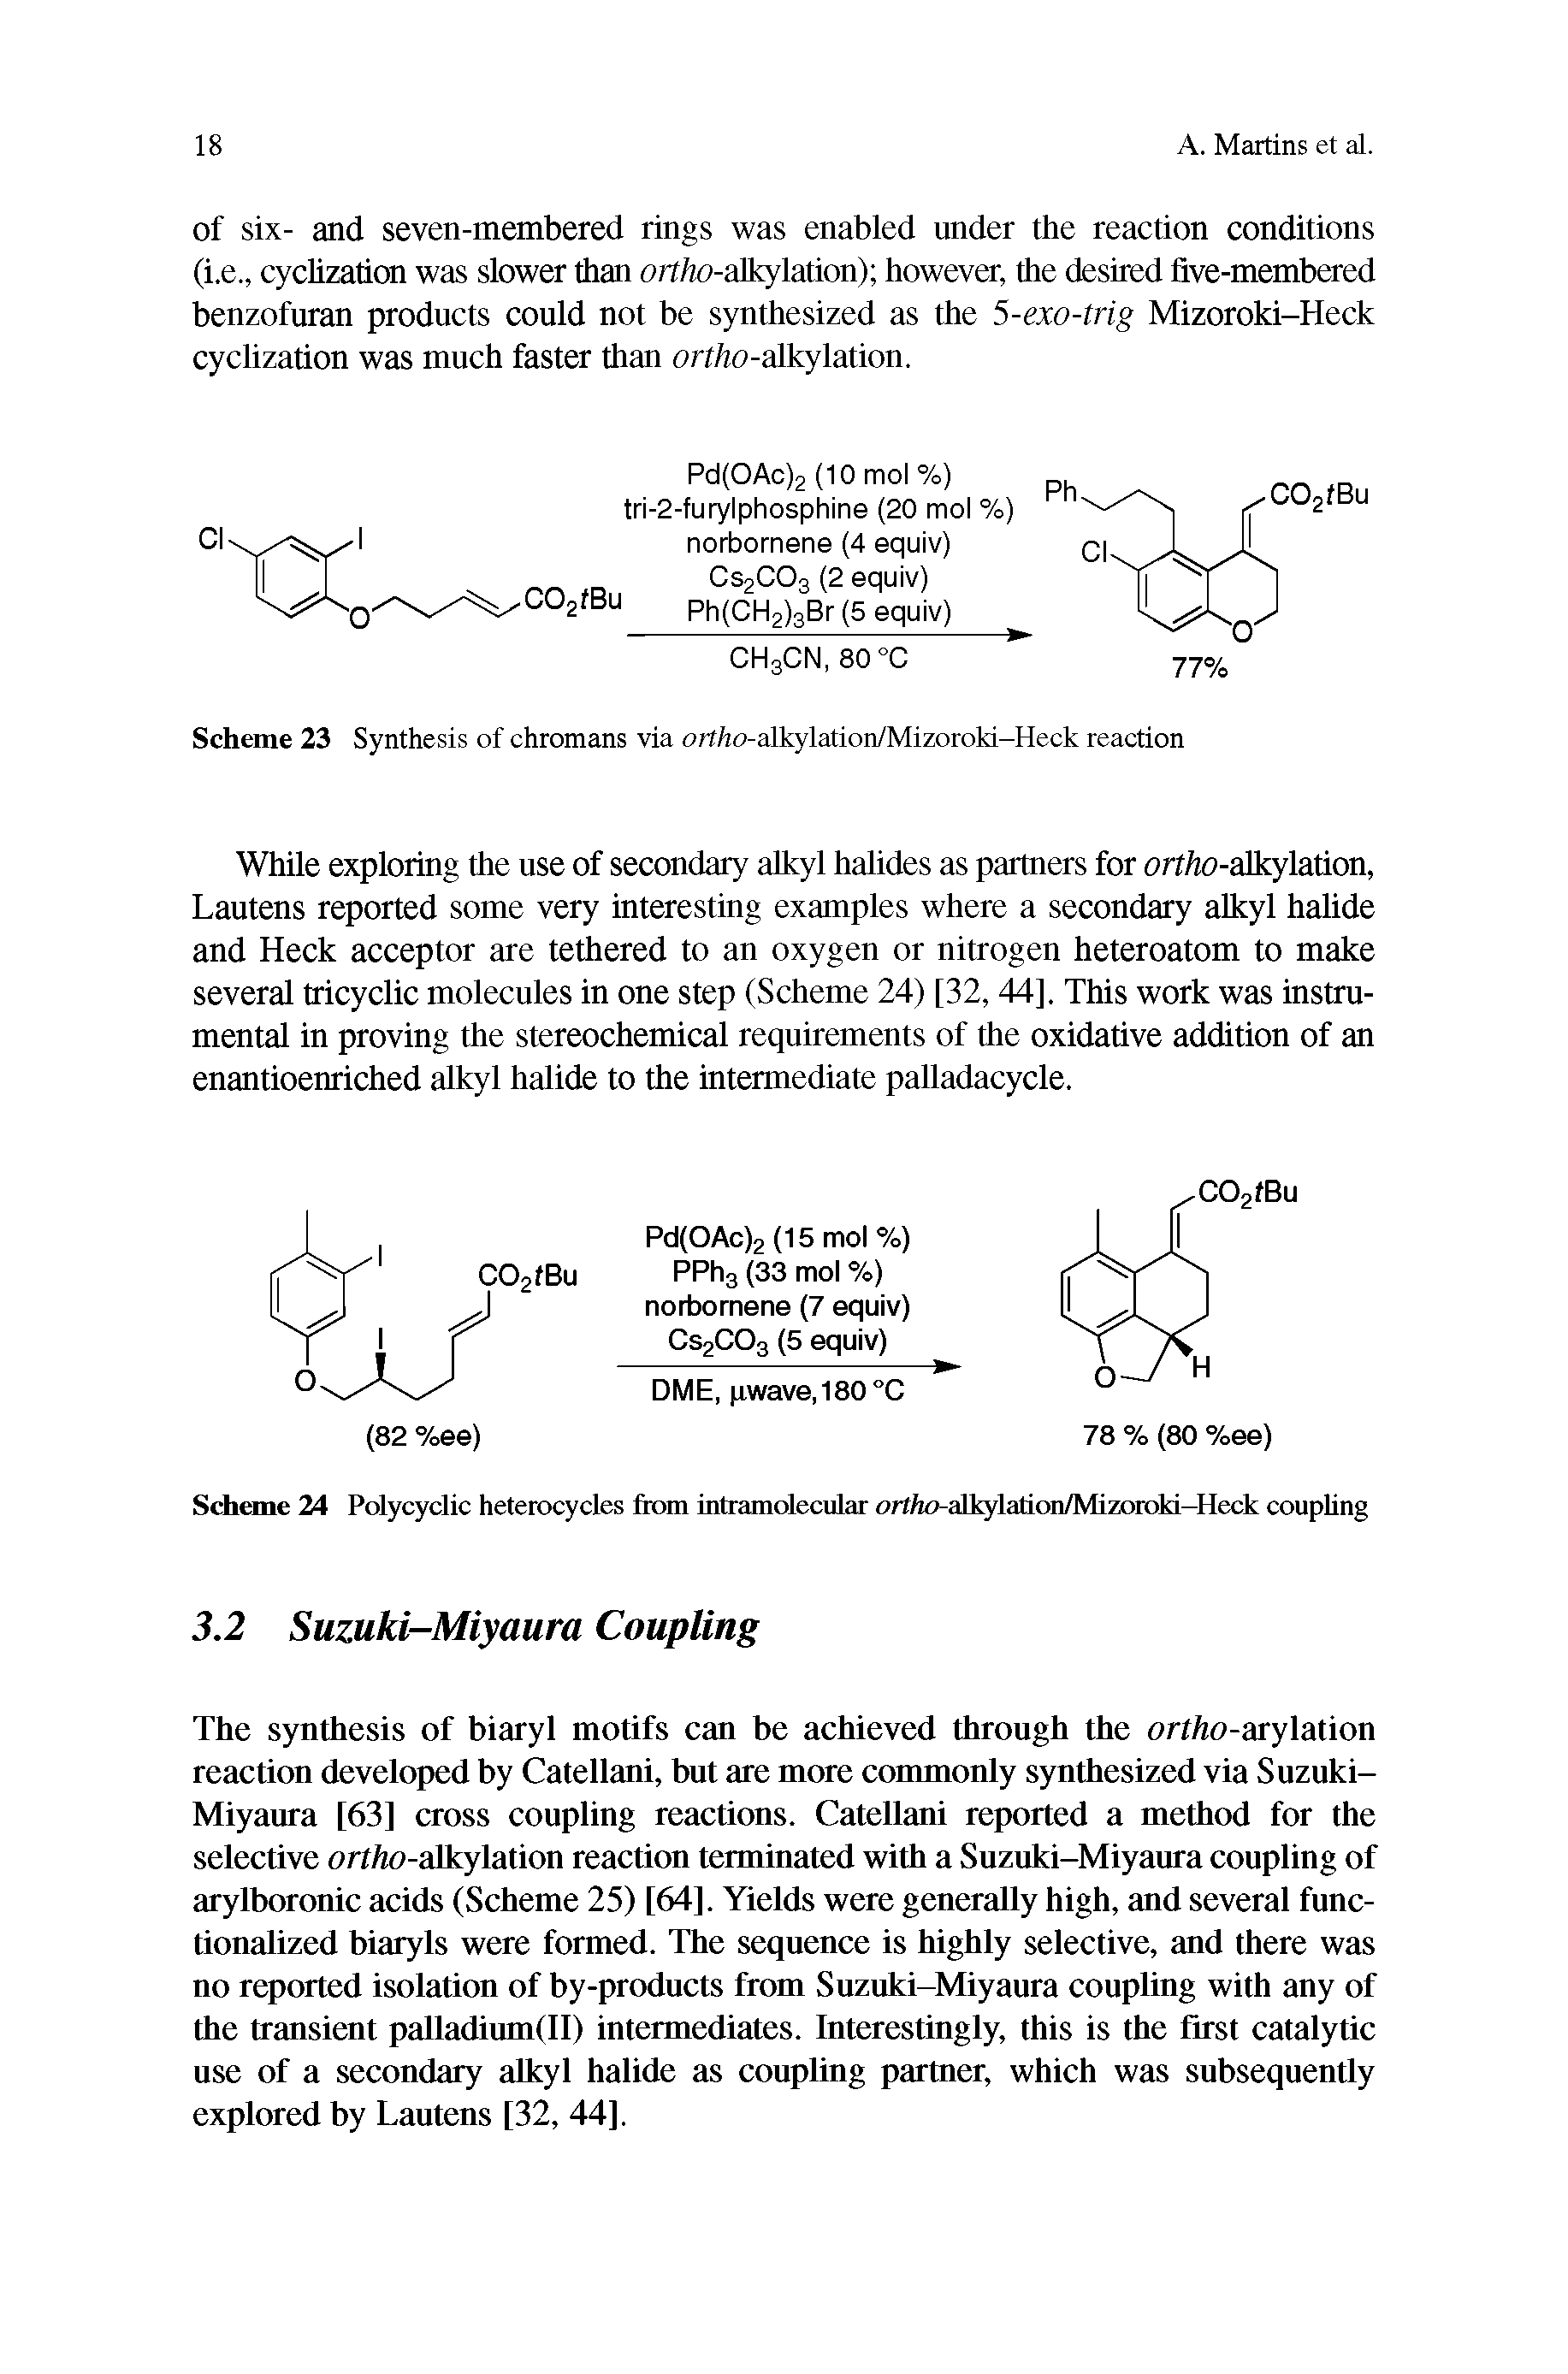 Scheme 23 Synthesis of chromans via ortho-alkylation/Mizoroki-Heck reaction...